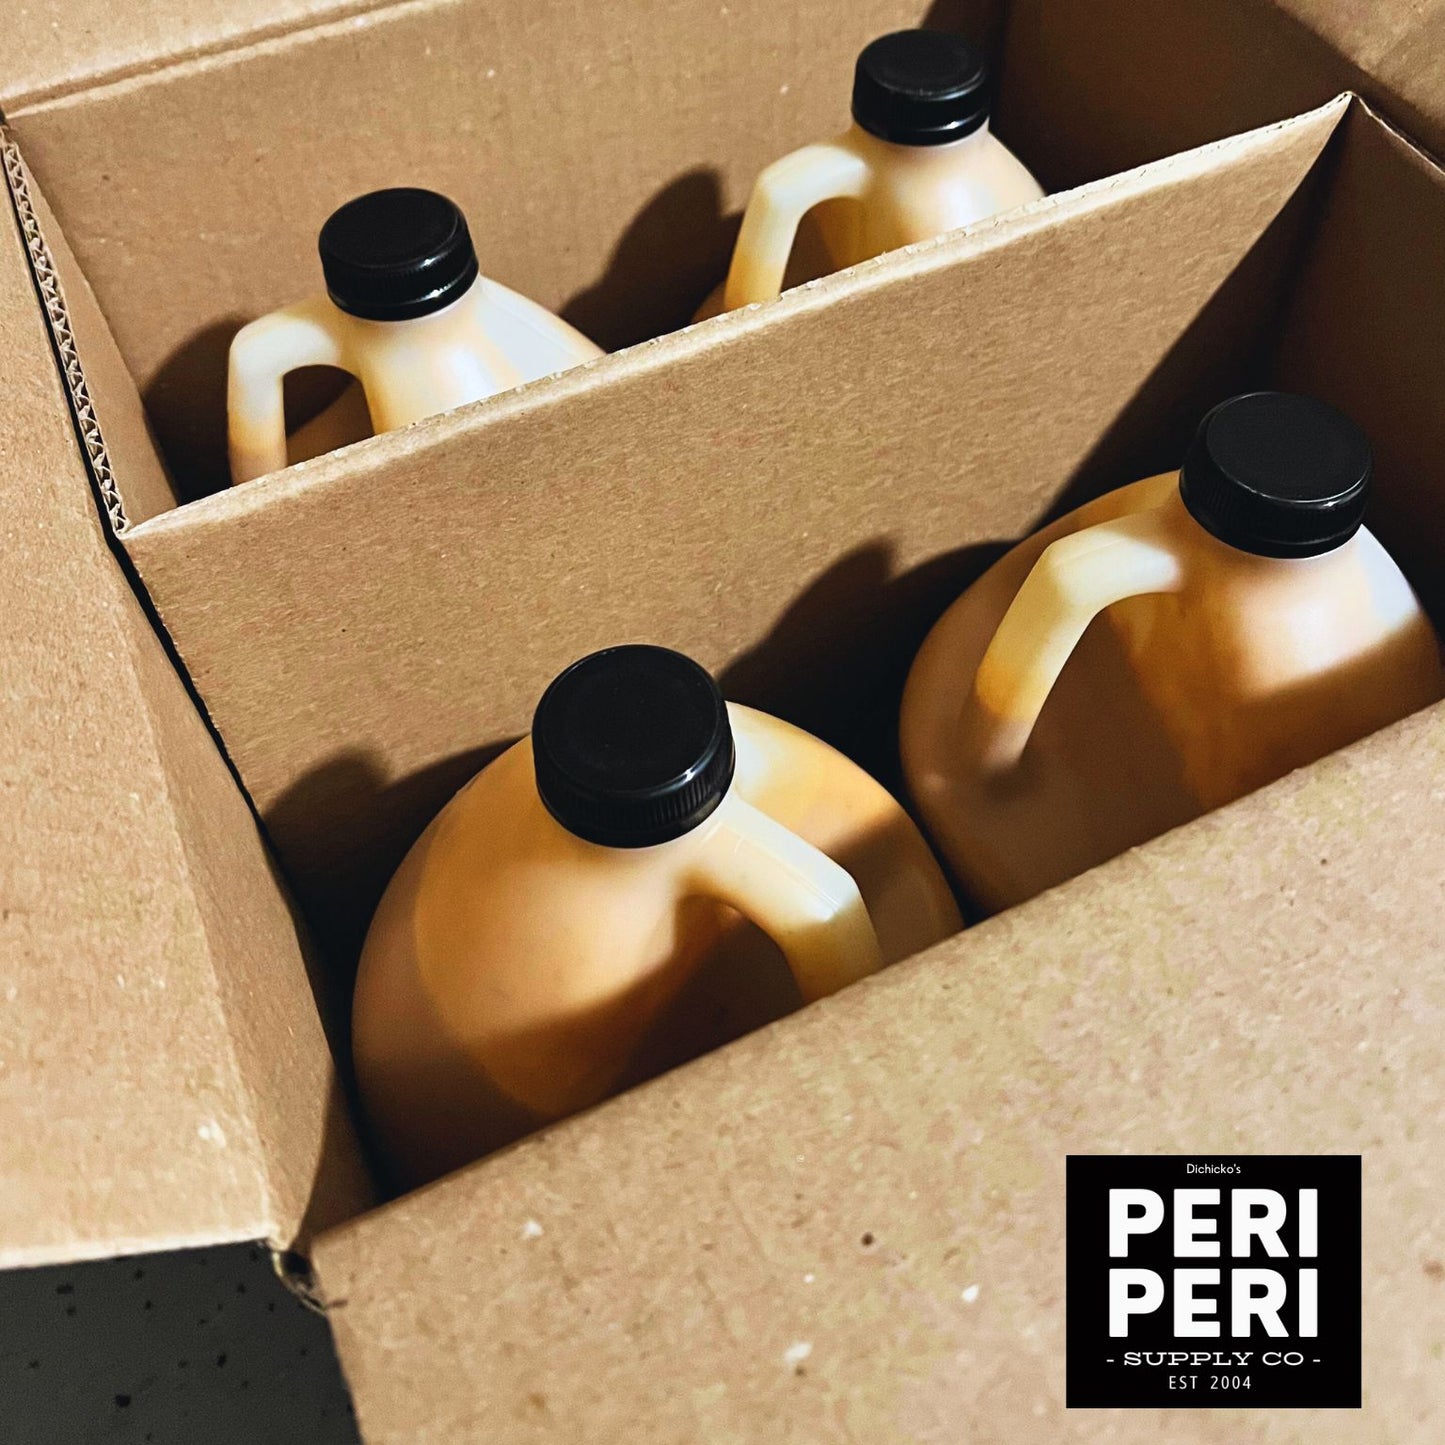 Mild Peri Peri Sauce - 4 Gallons per case - Wholesale